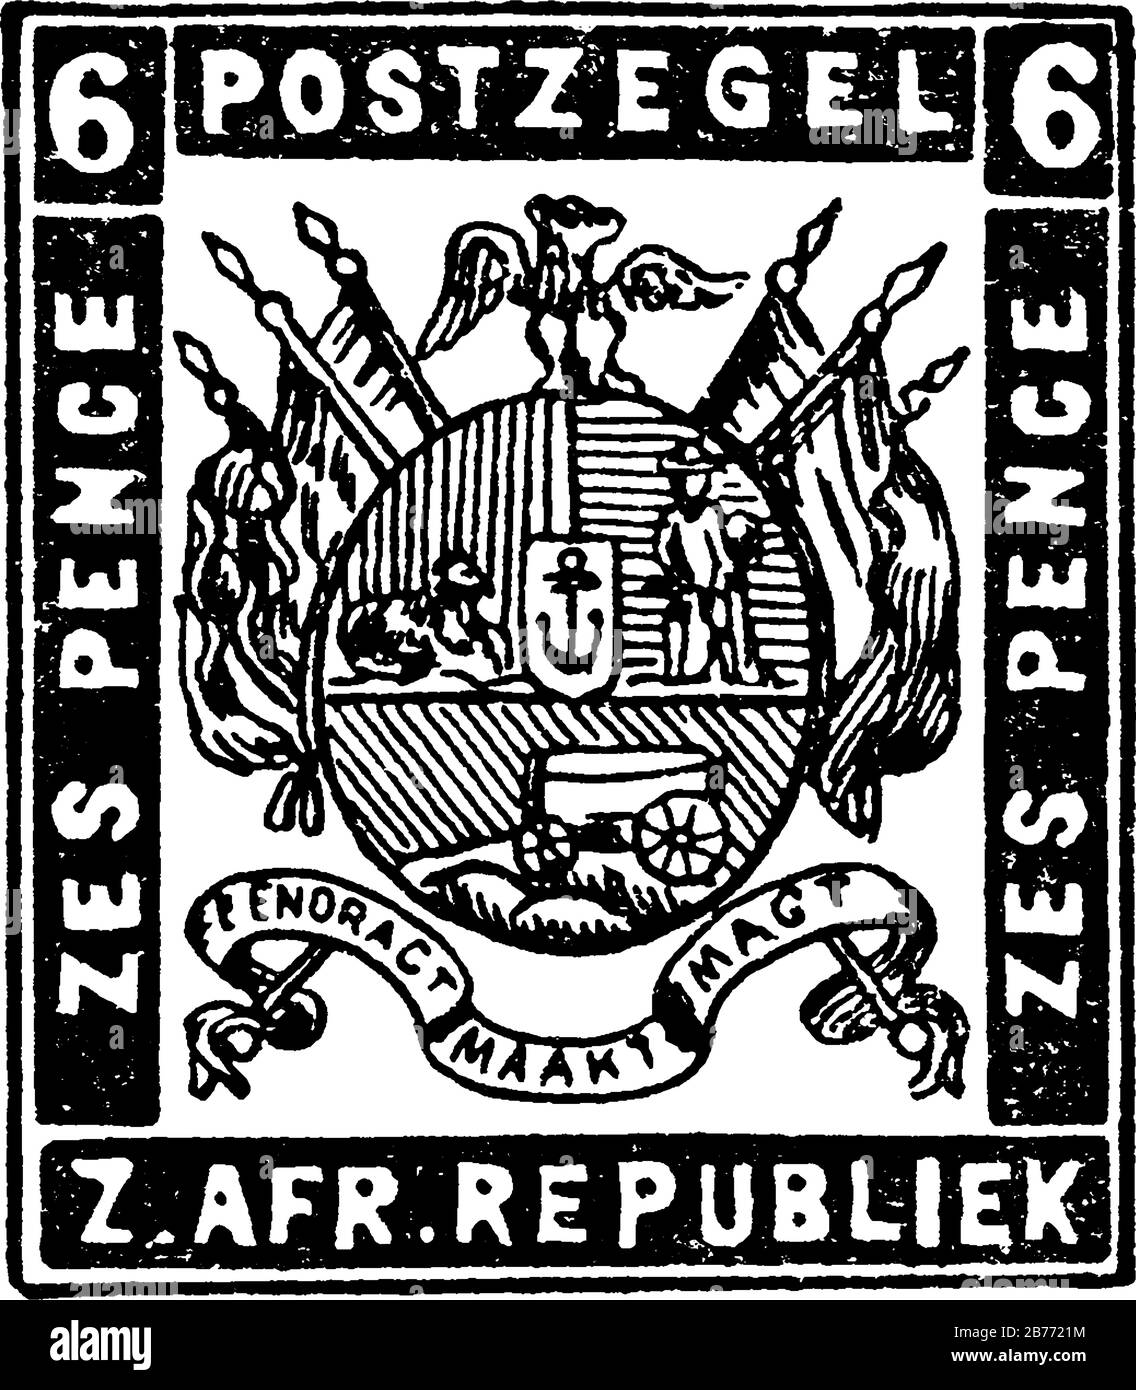 Sobre de la República de Sudáfrica (6 pence) de 1872-1873, un pequeño pedazo de papel adhesivo fue pegado a algo para mostrar una cantidad de dinero pagado, la pinta Ilustración del Vector